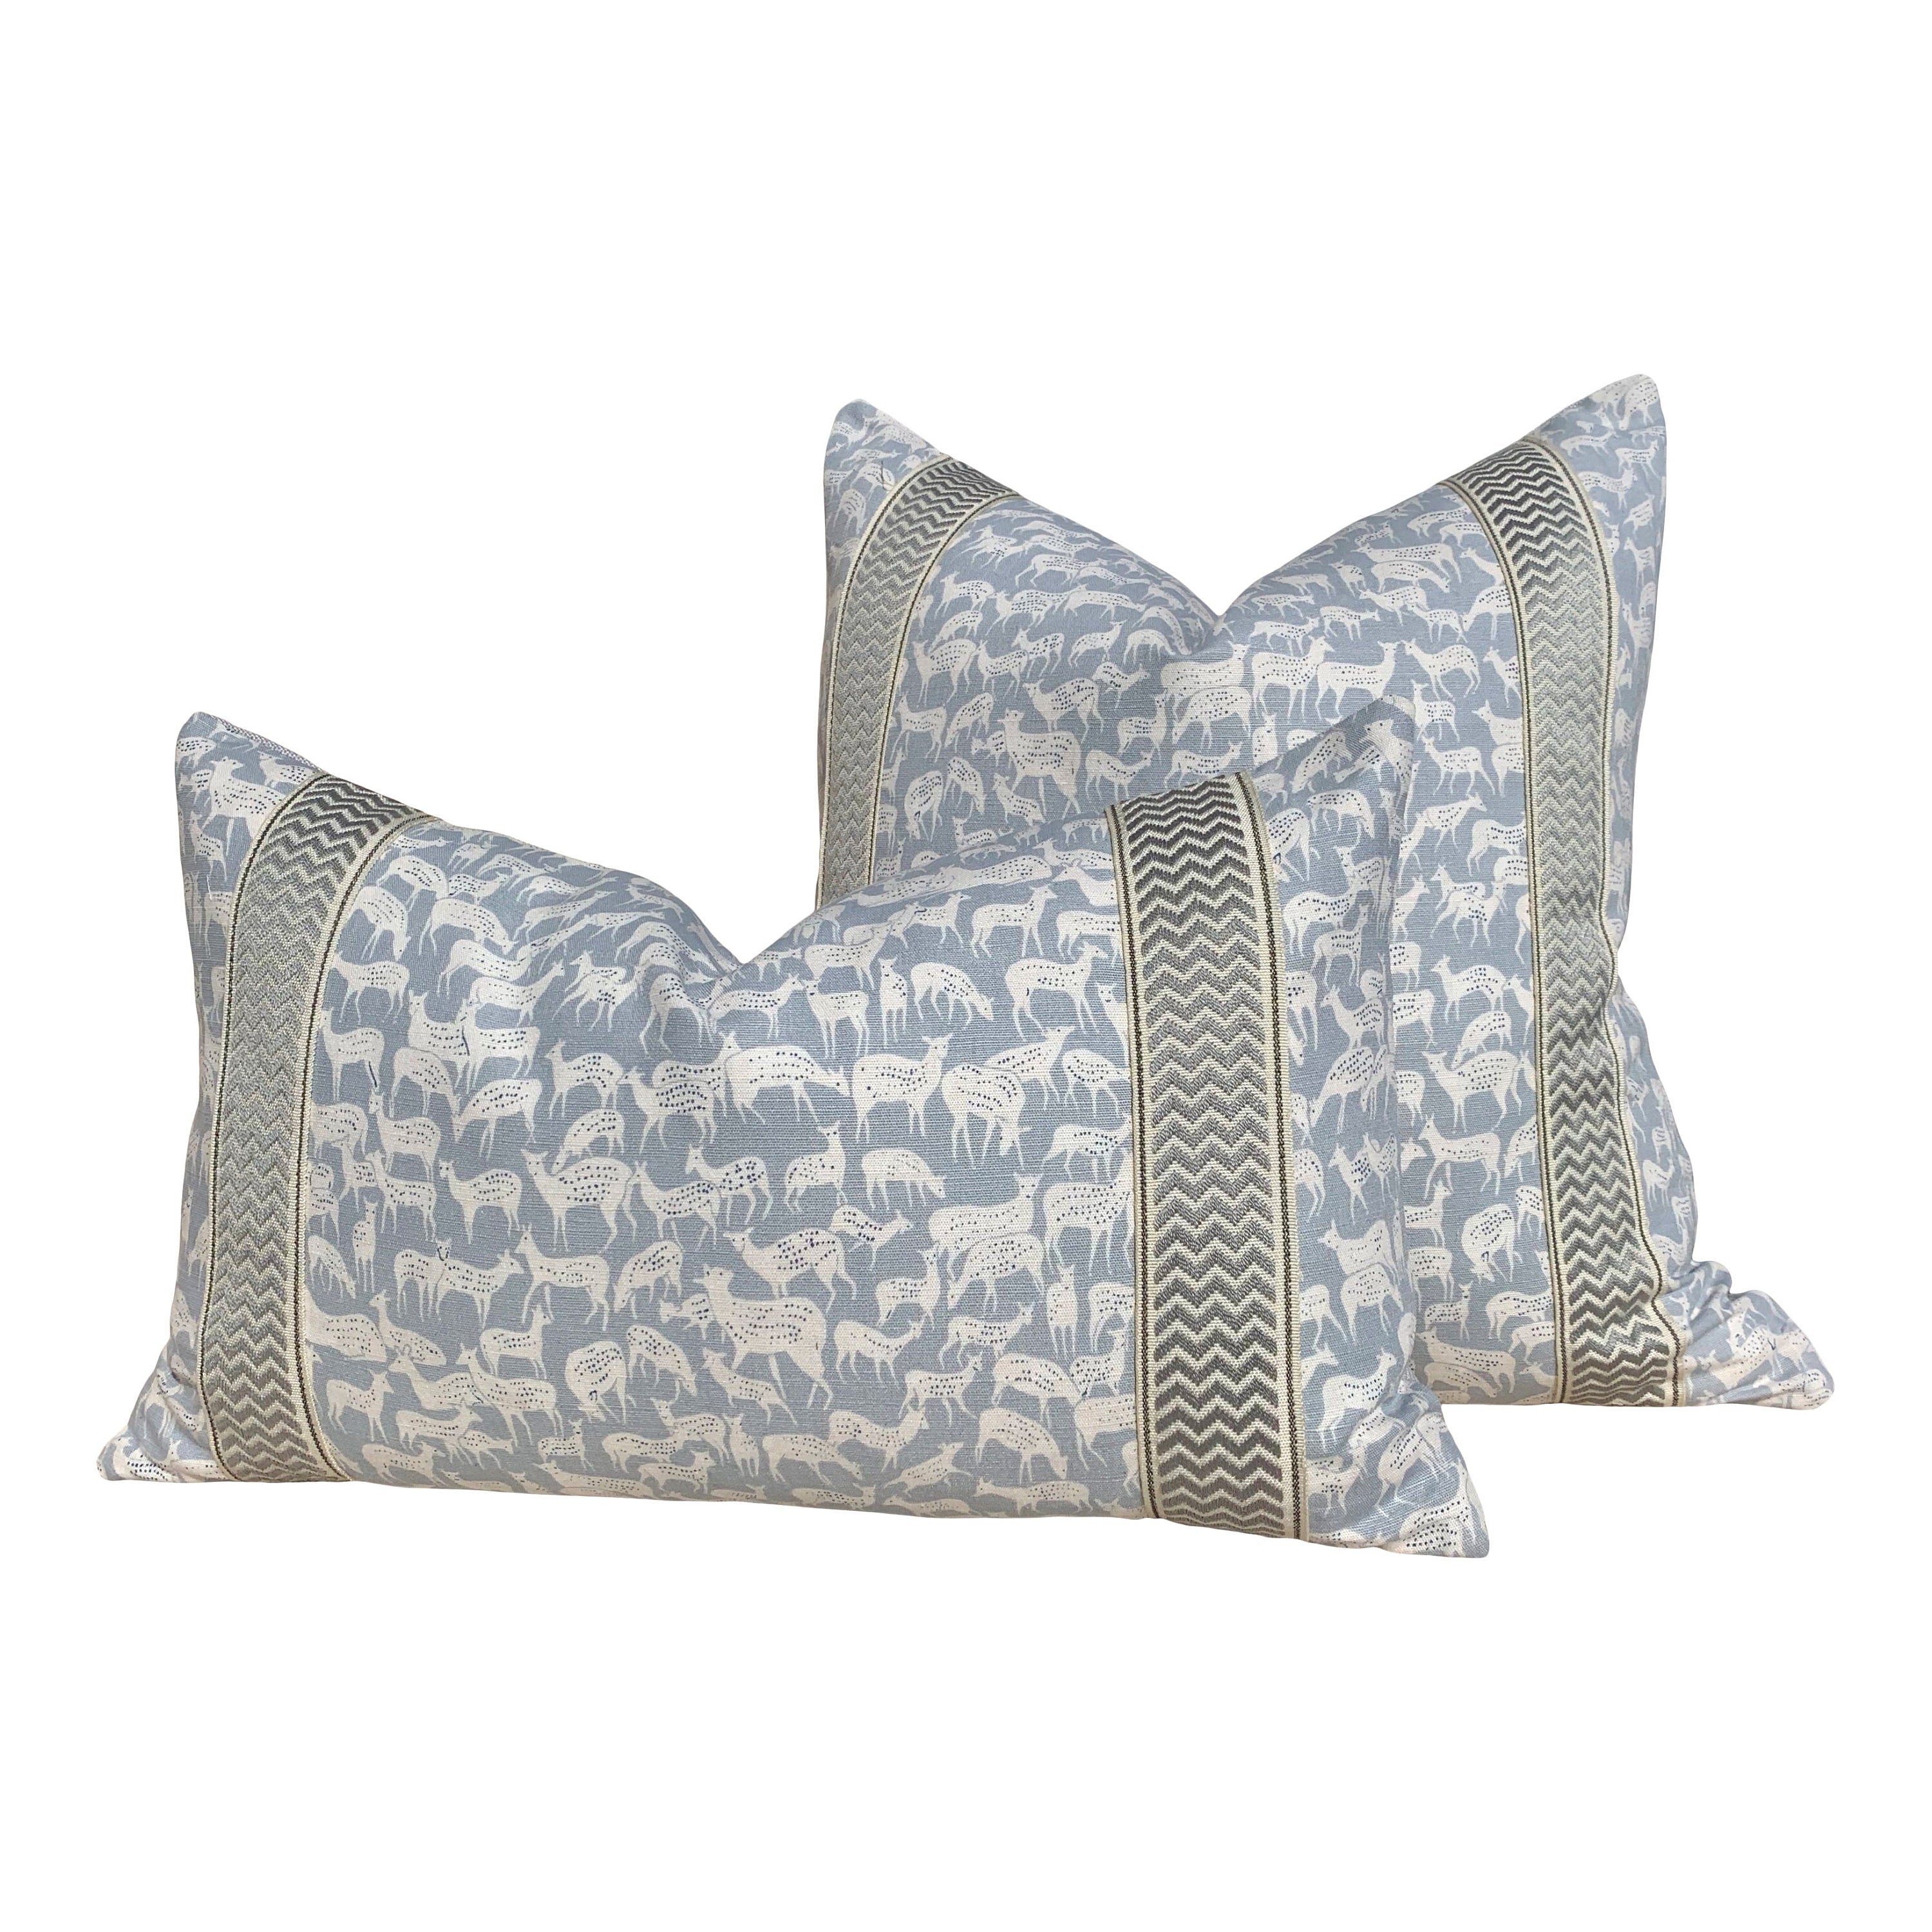 Schumacher Fauna Pillow in Slate Blue. Animal Print Pillow // Modern  pillow cover // Long lumbar pillow.